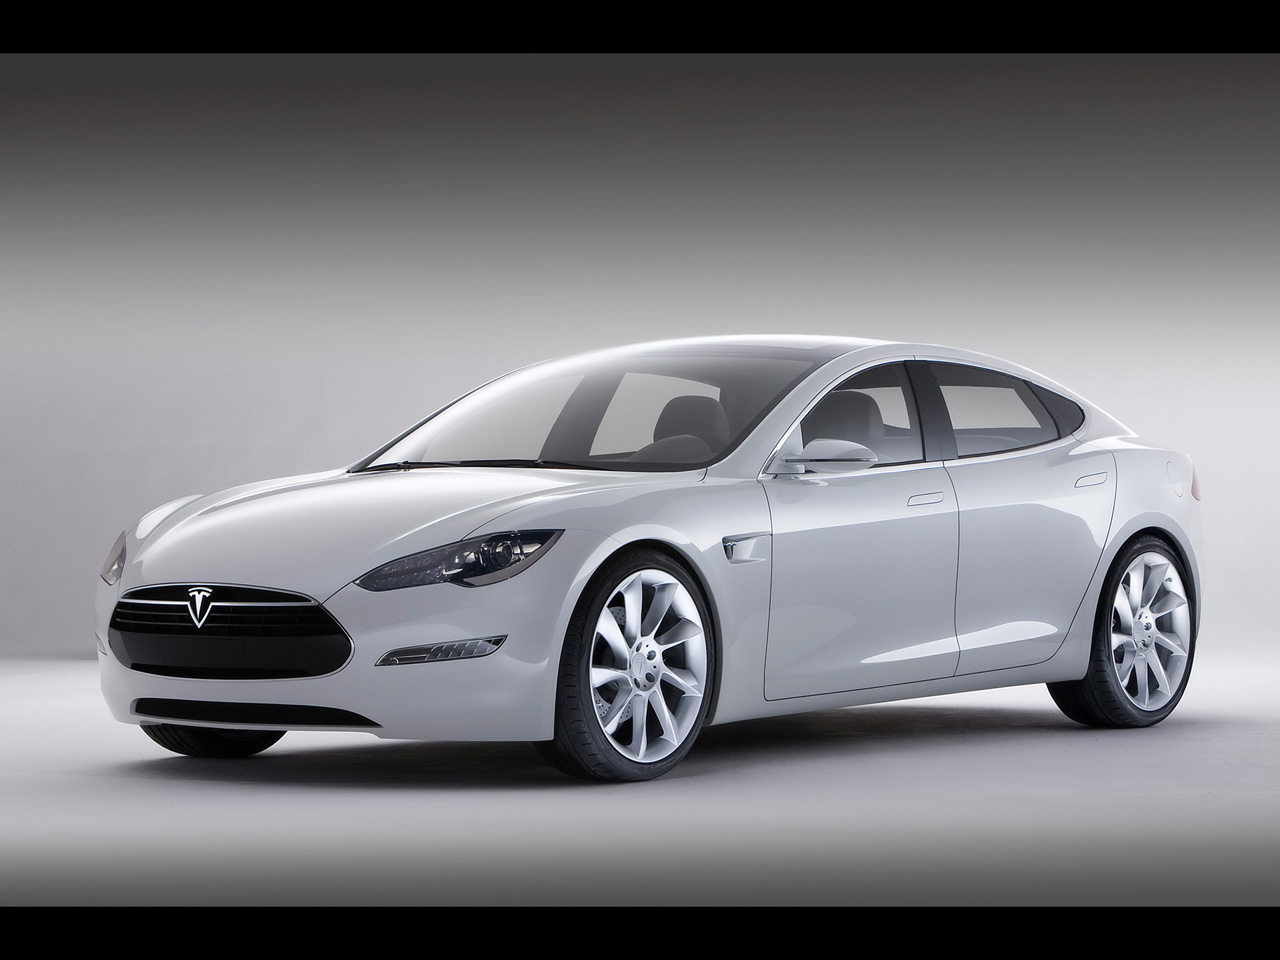 2011 Tesla Model S